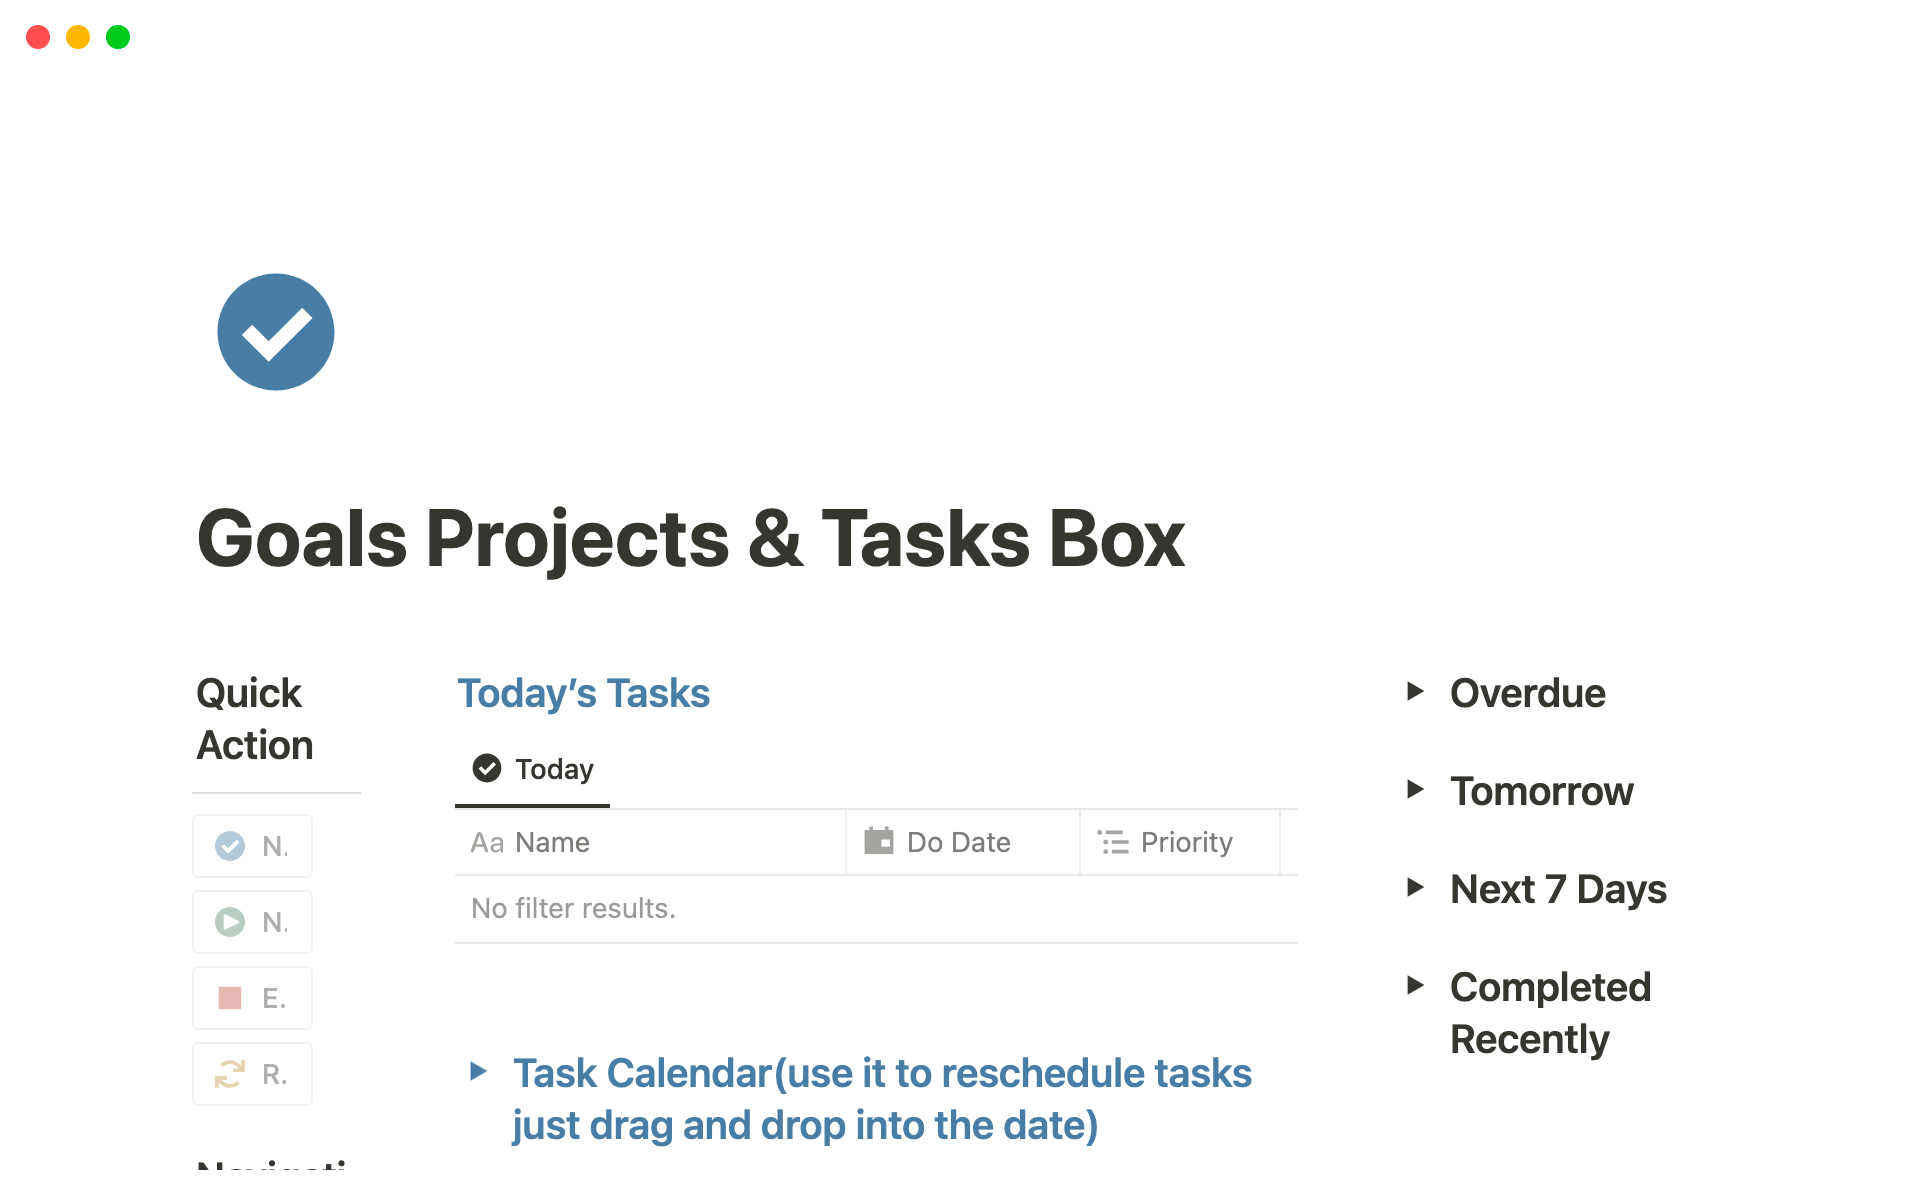 Uma prévia do modelo para Goals projects & Tasks Box